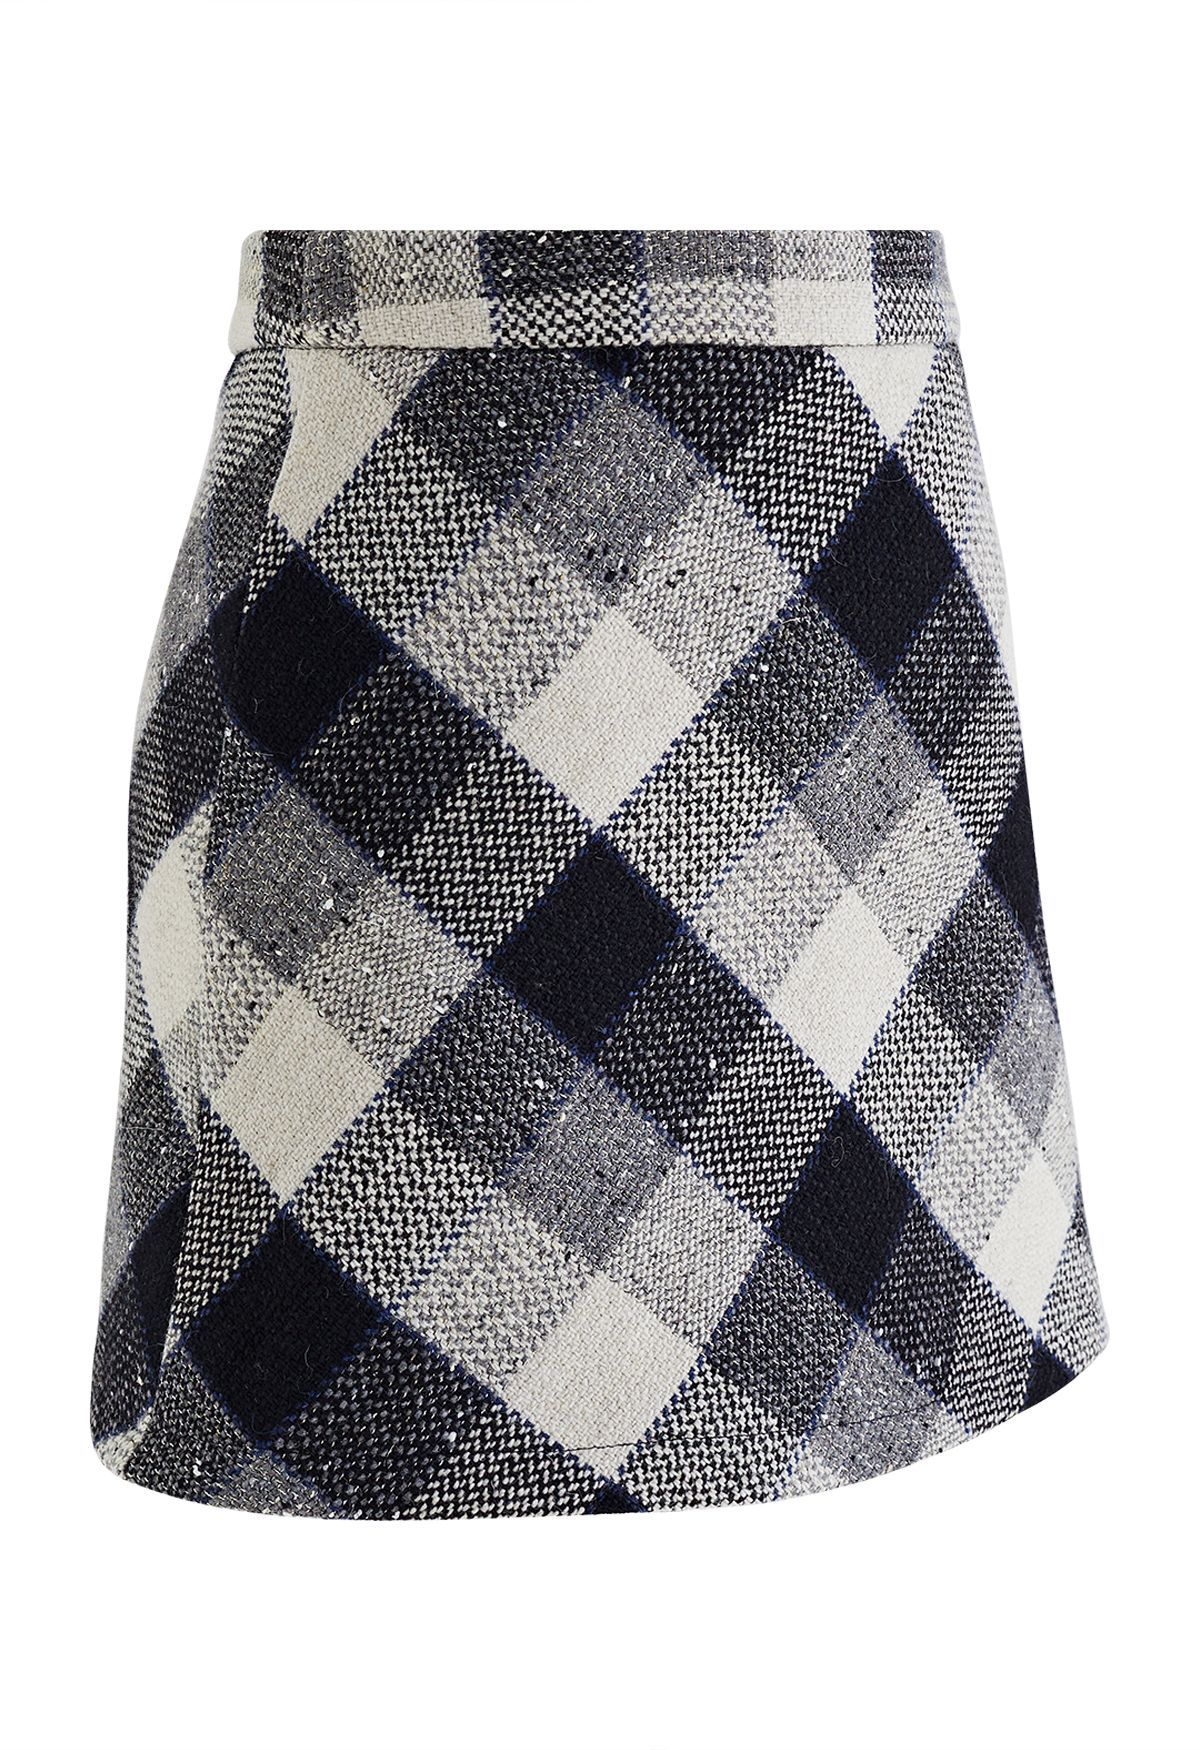 Retro Check Tweed Mini Skirt in Grey | Chicwish